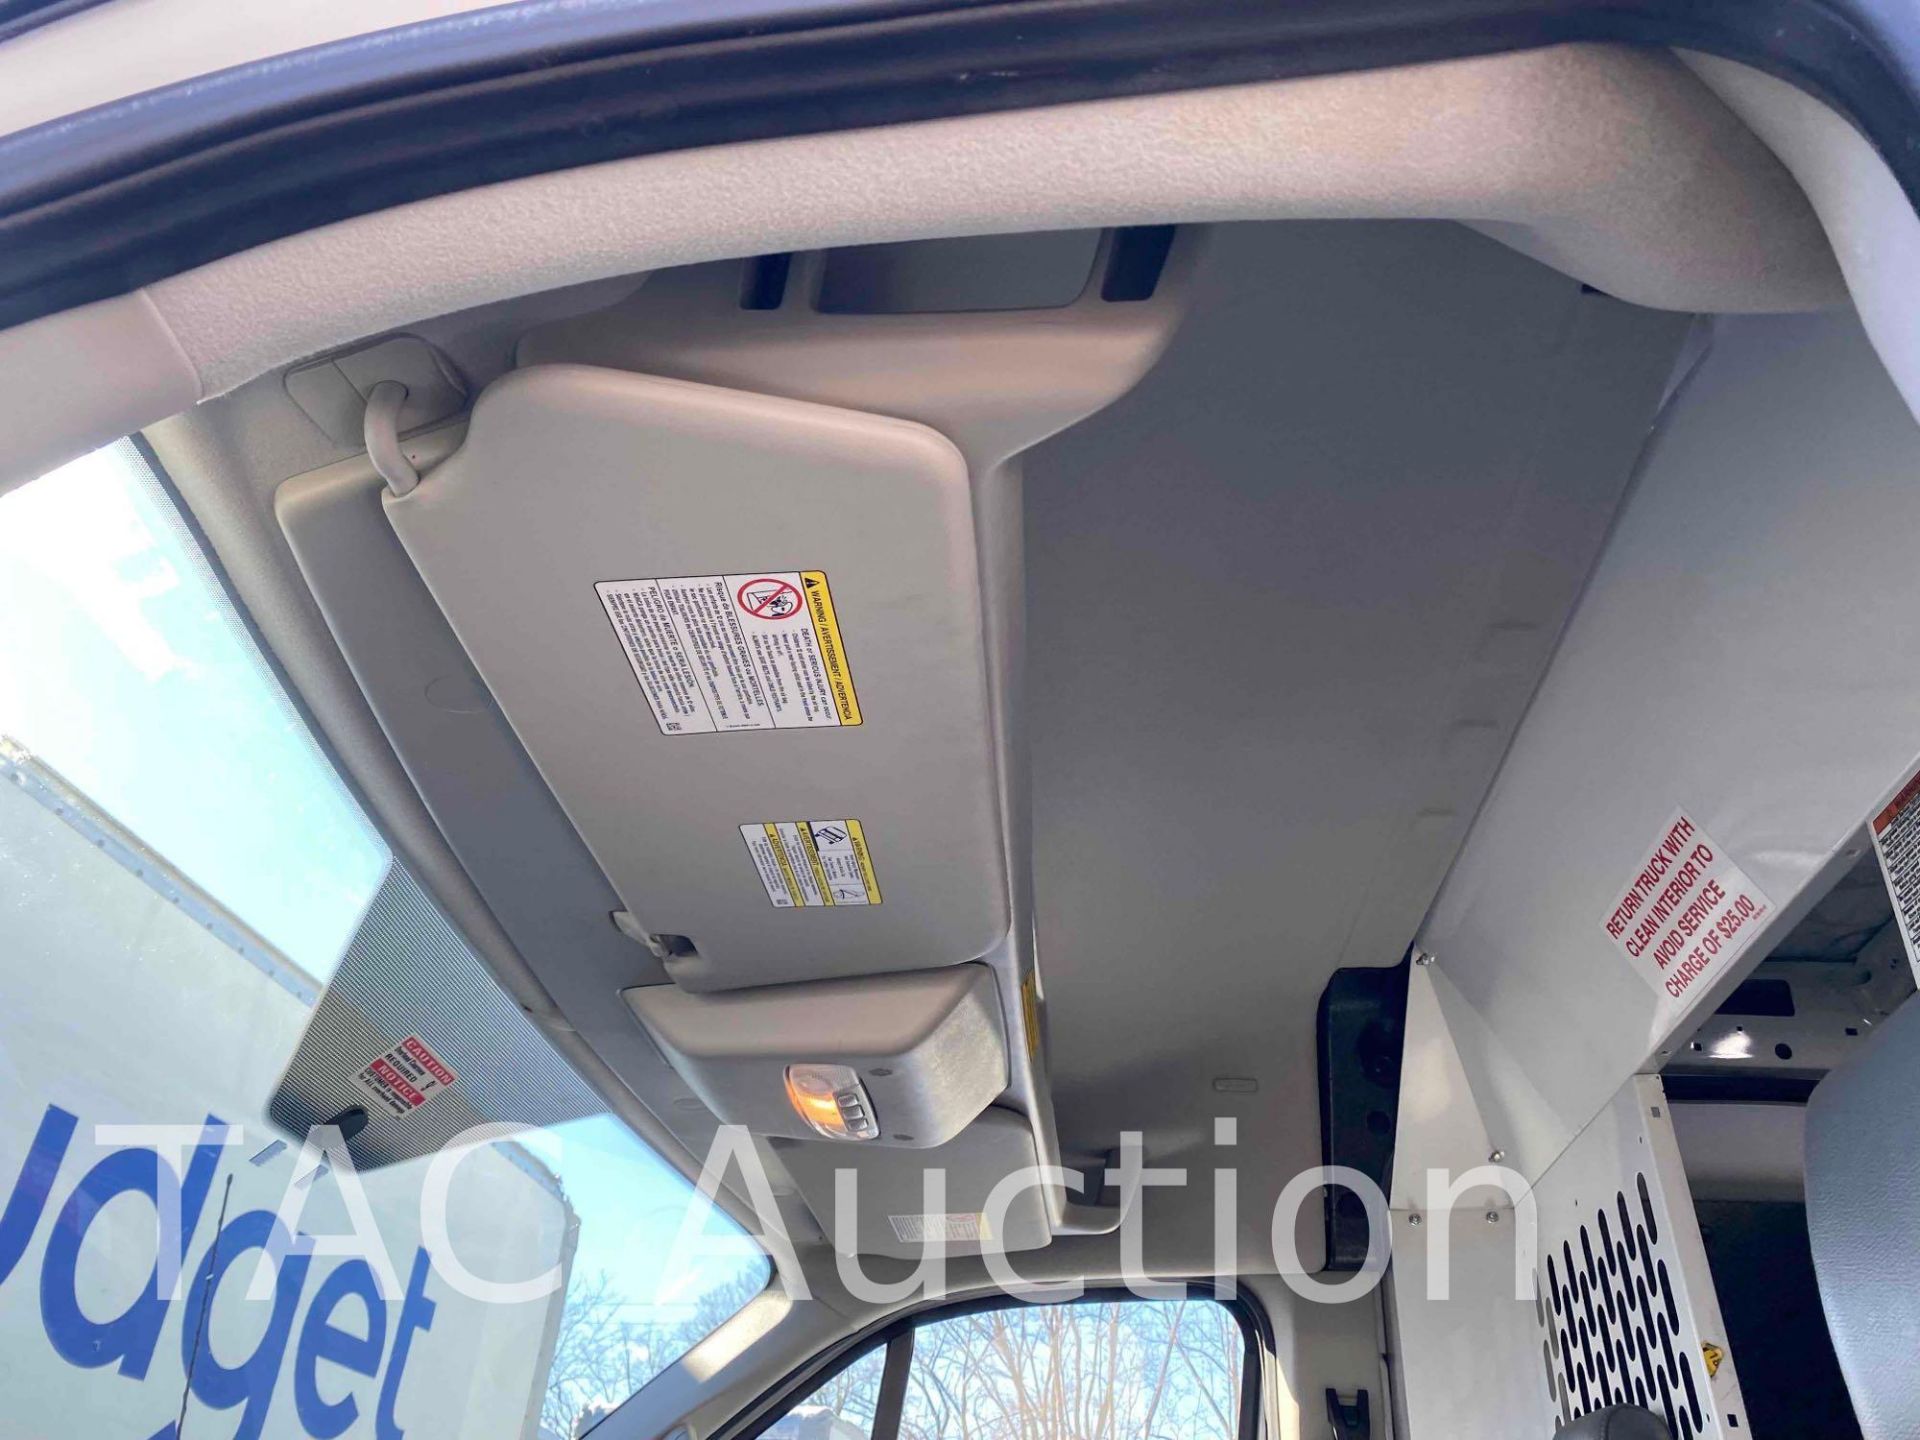 2019 Ford Transit 150 Cargo Van - Image 27 of 48